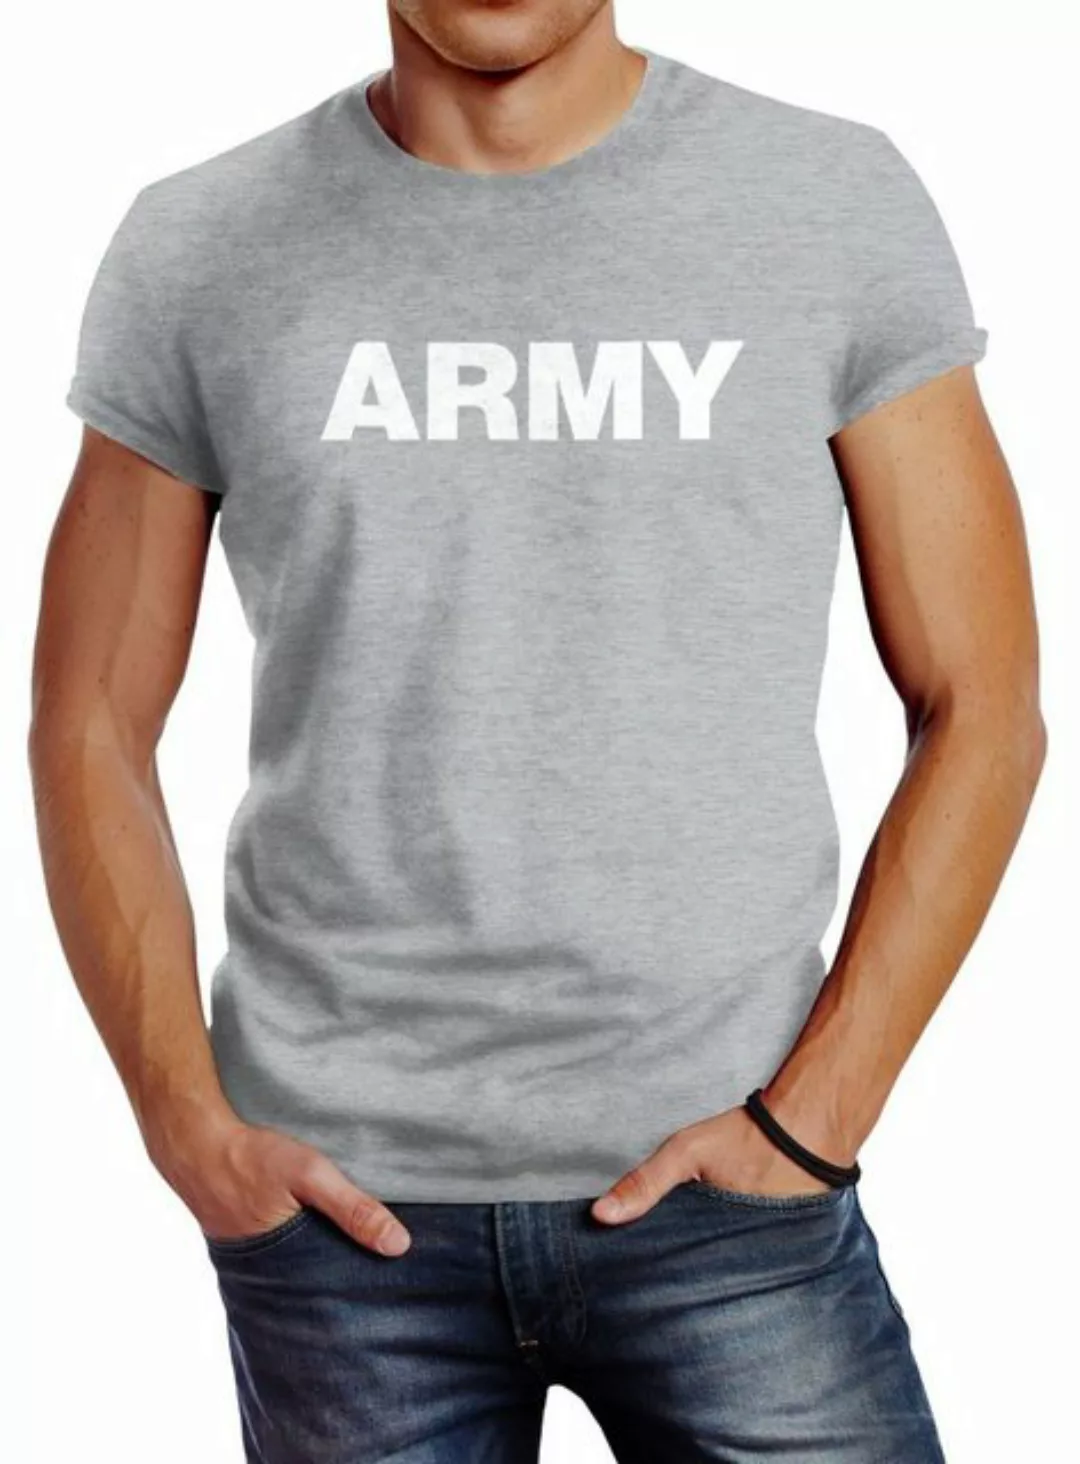 Print-Shirt cooles Herren T-Shirt Aufdruck Army Print Fashion Streetstyle N günstig online kaufen